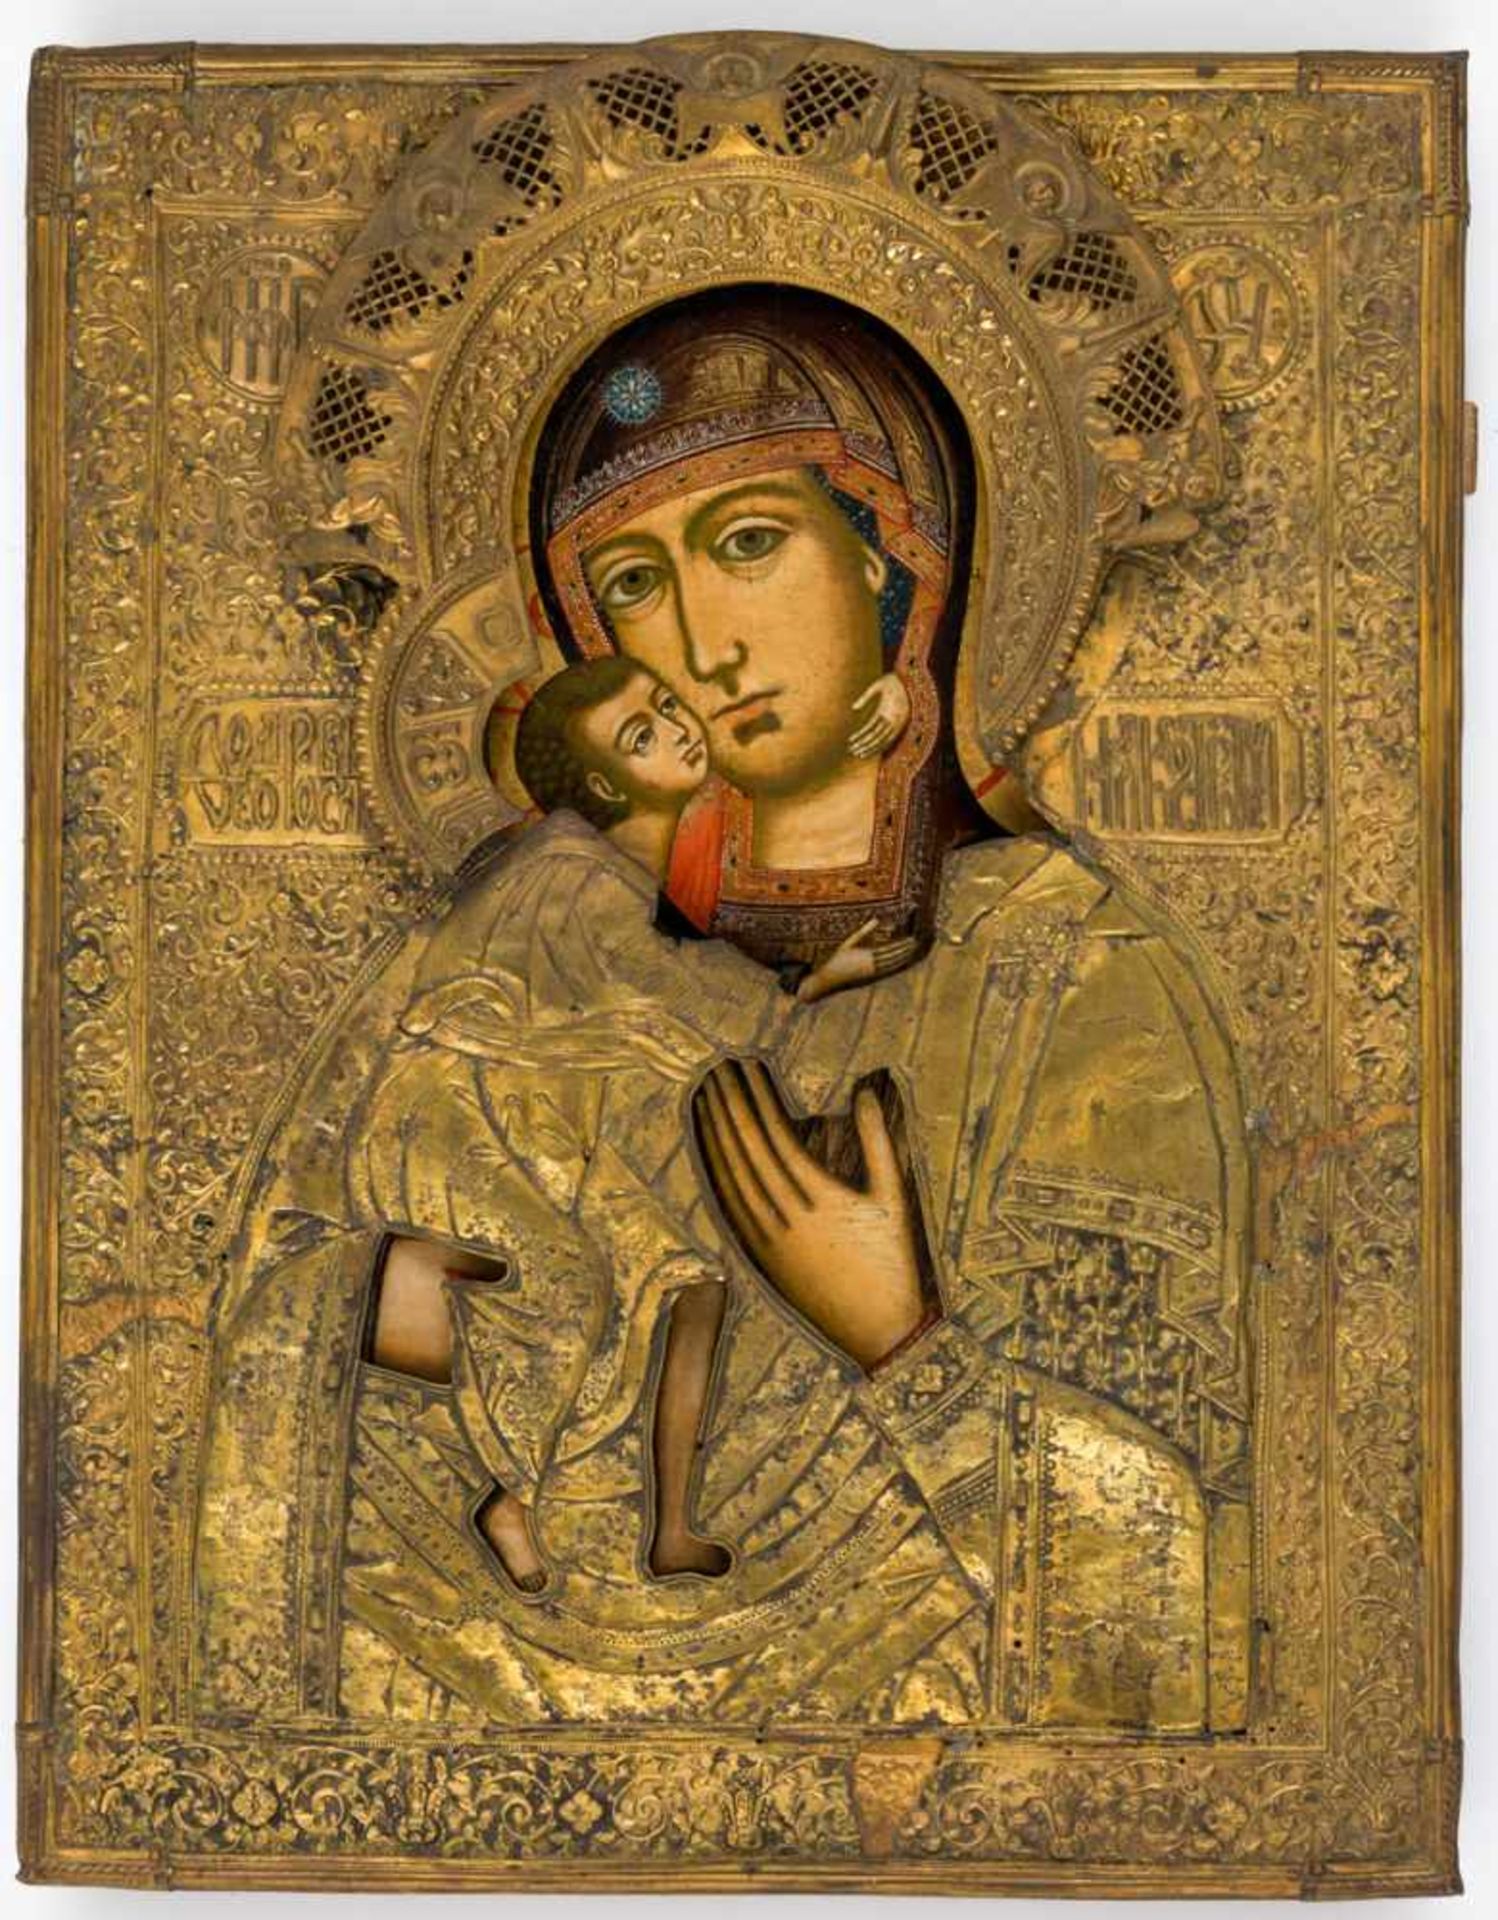 Gottesmutter Feodorovskaja Sehr grosse russische Ikone mit handgetriebenen Messingoklad, 18. Jh.